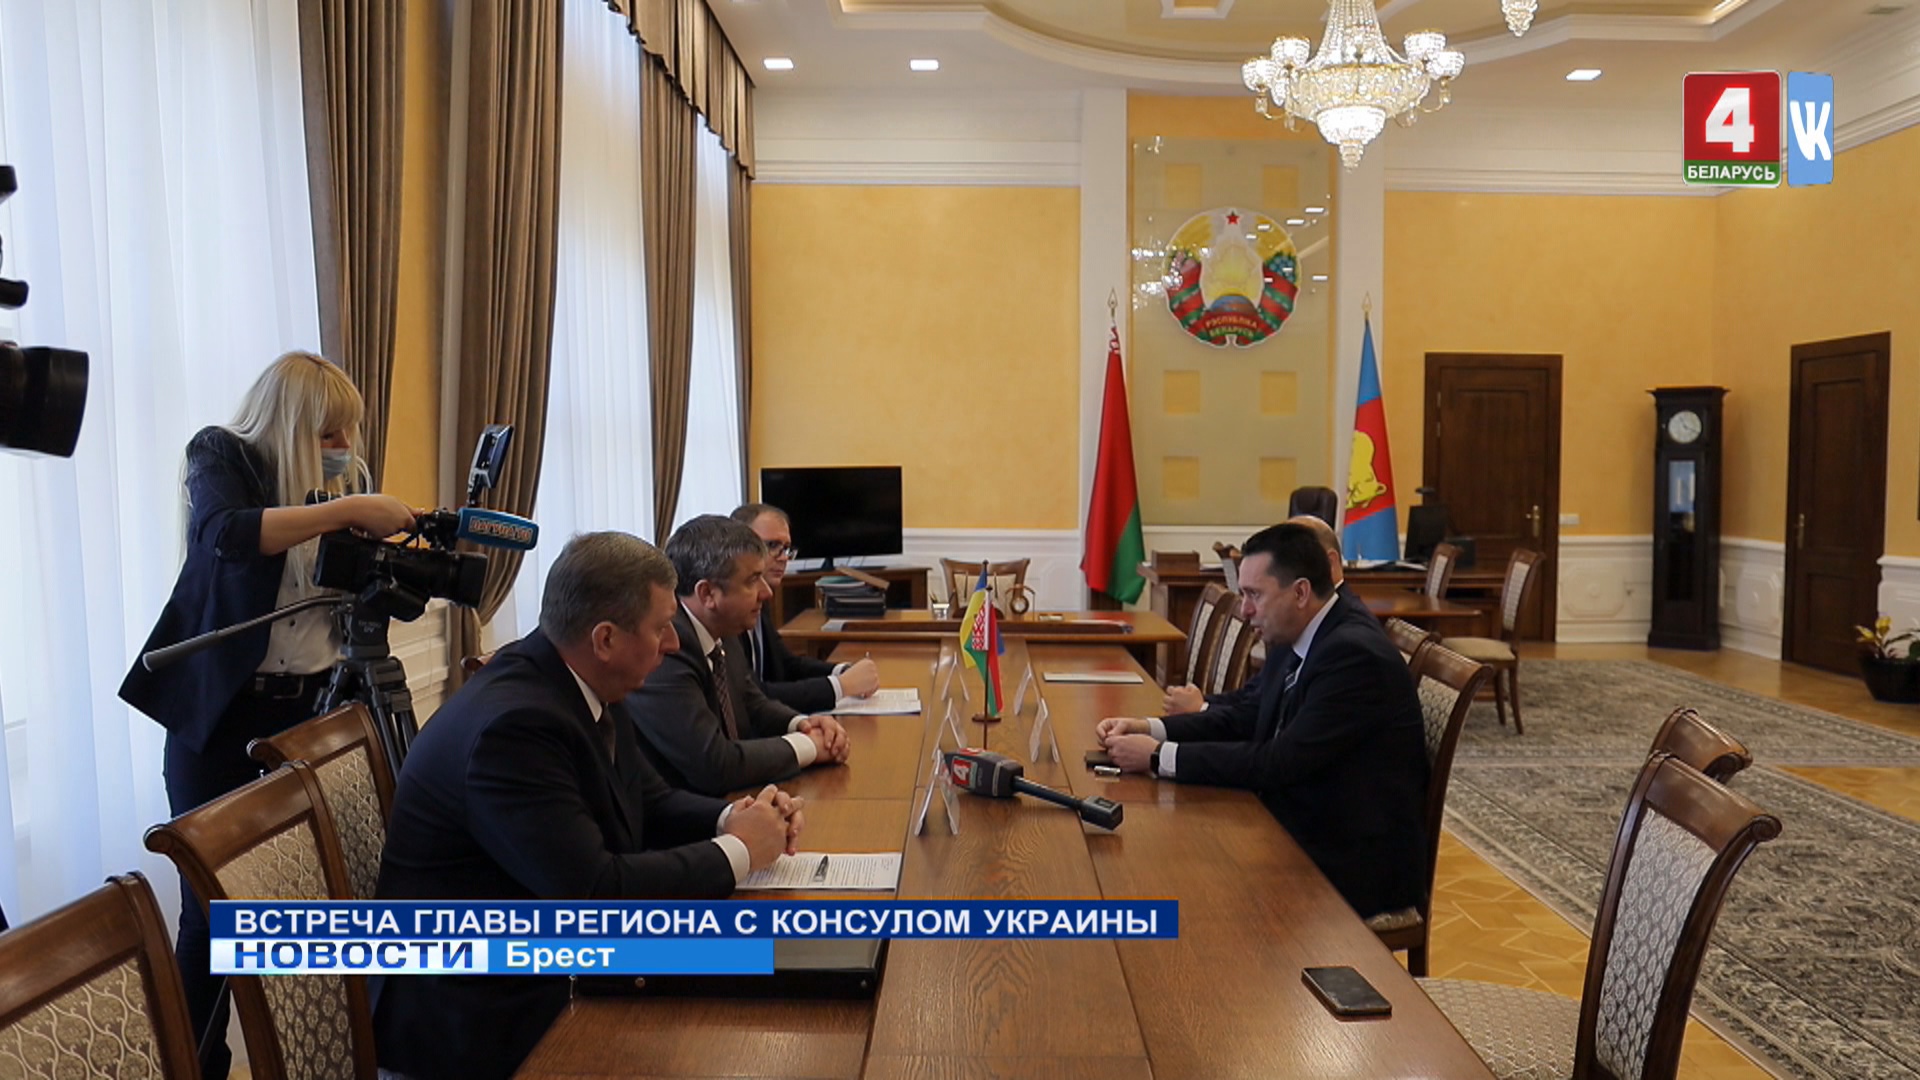 Встреча главы региона с консулом Украины